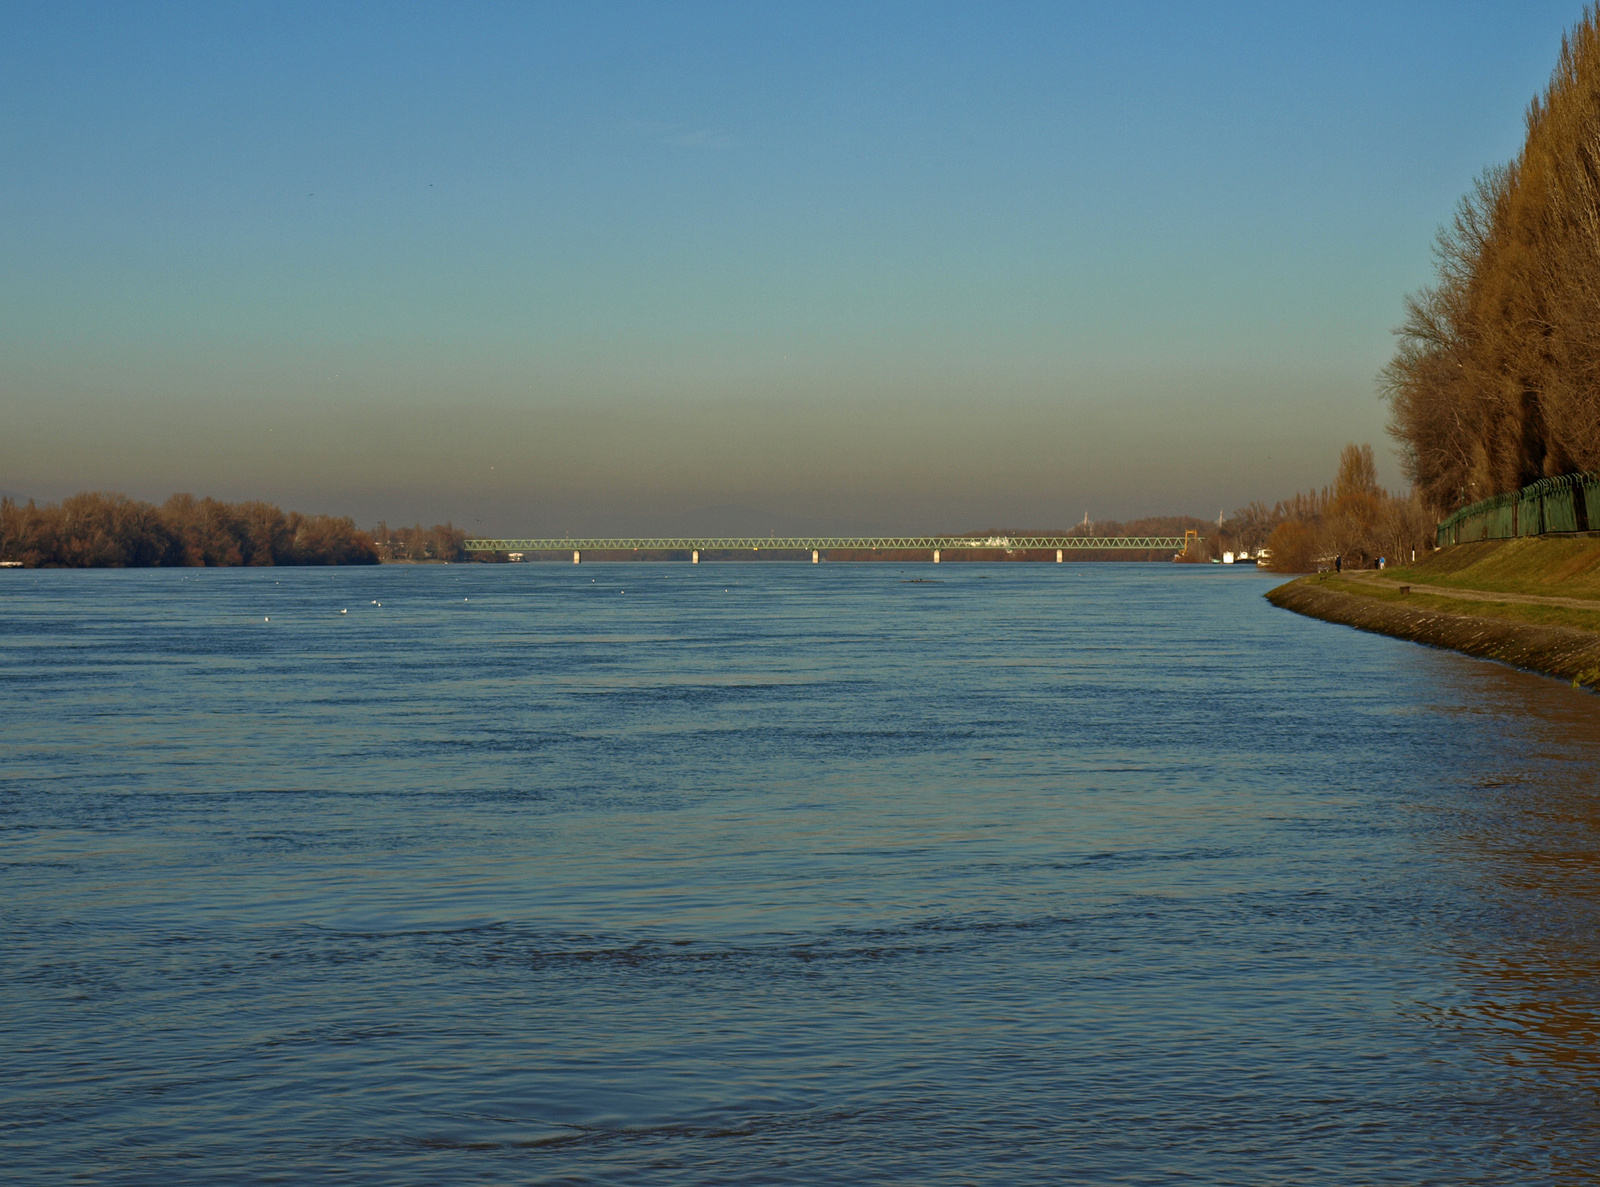 széles a Duna - meglepődtem, milyen magasan van a víz